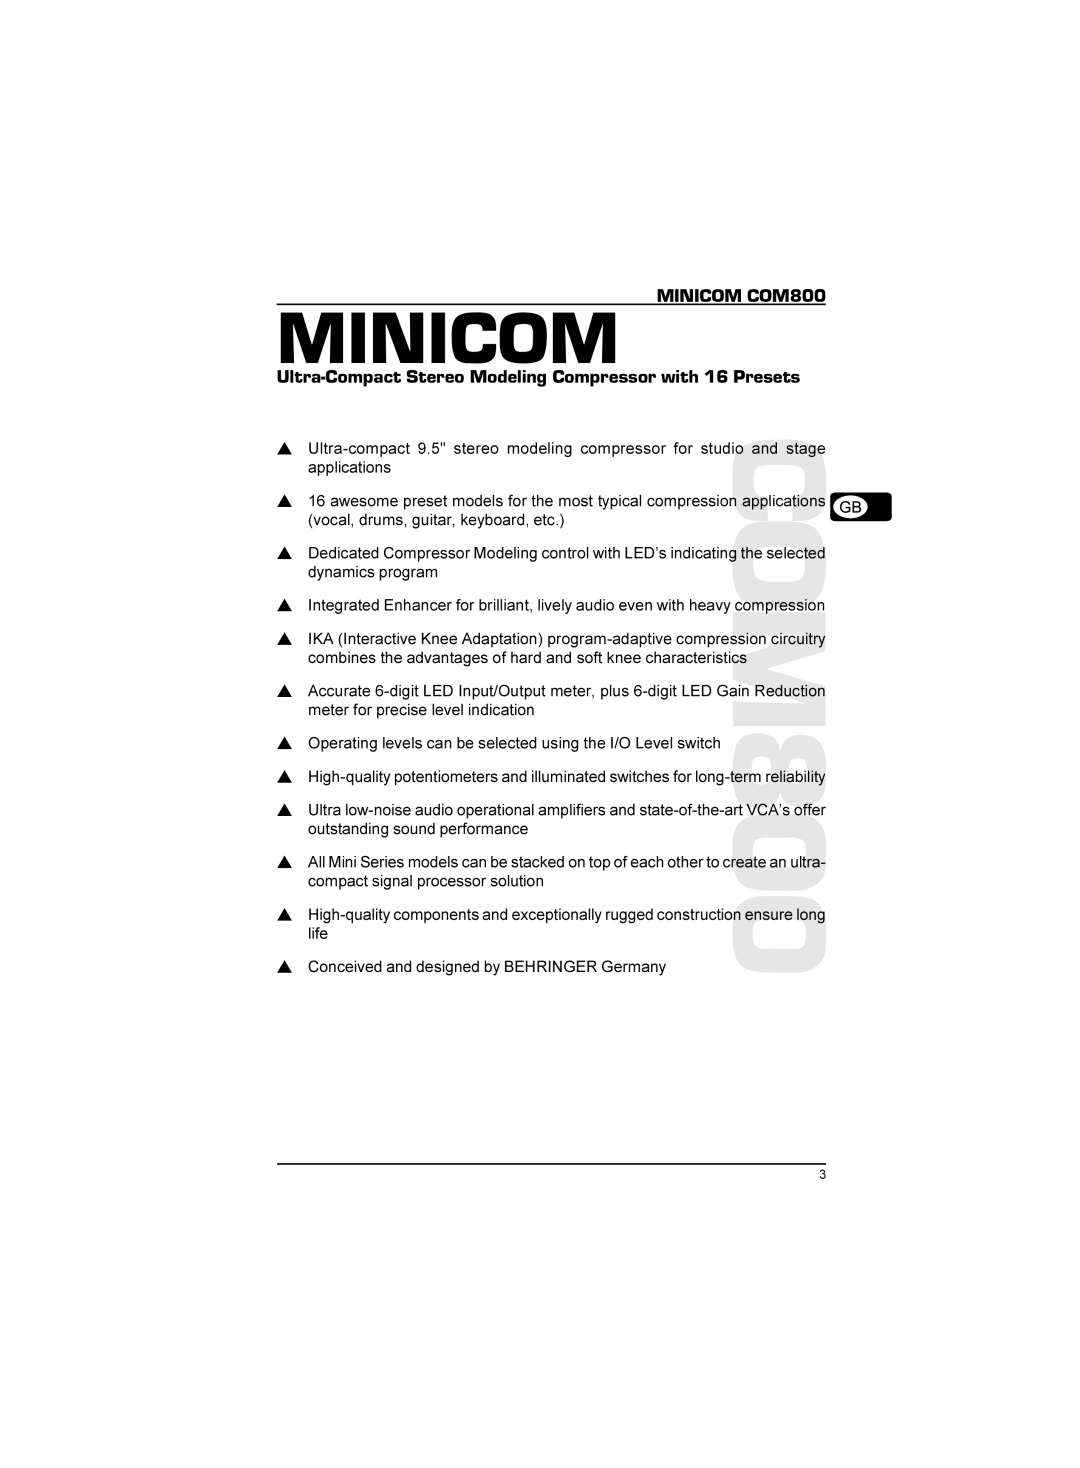 Behringer manual MINICOM MINICOM COM800, Ultra-Compact Stereo Modeling Compressor with 16 Presets 